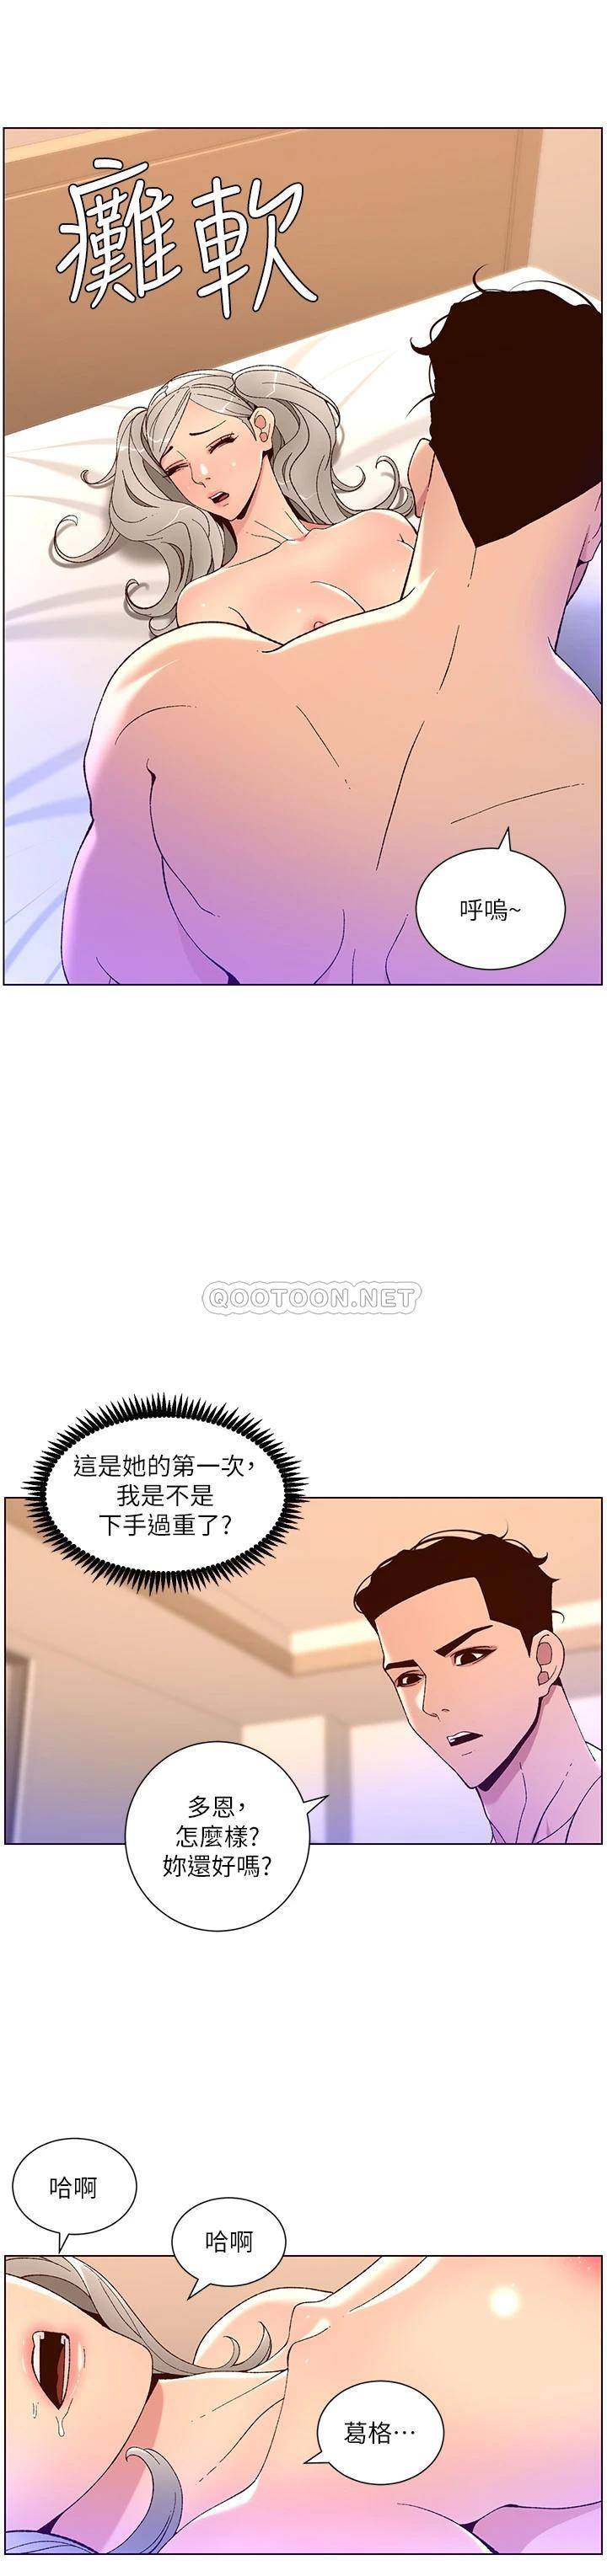 韩国污漫画 帝王App 第37话 第一次高潮的粉红鲍鱼 19